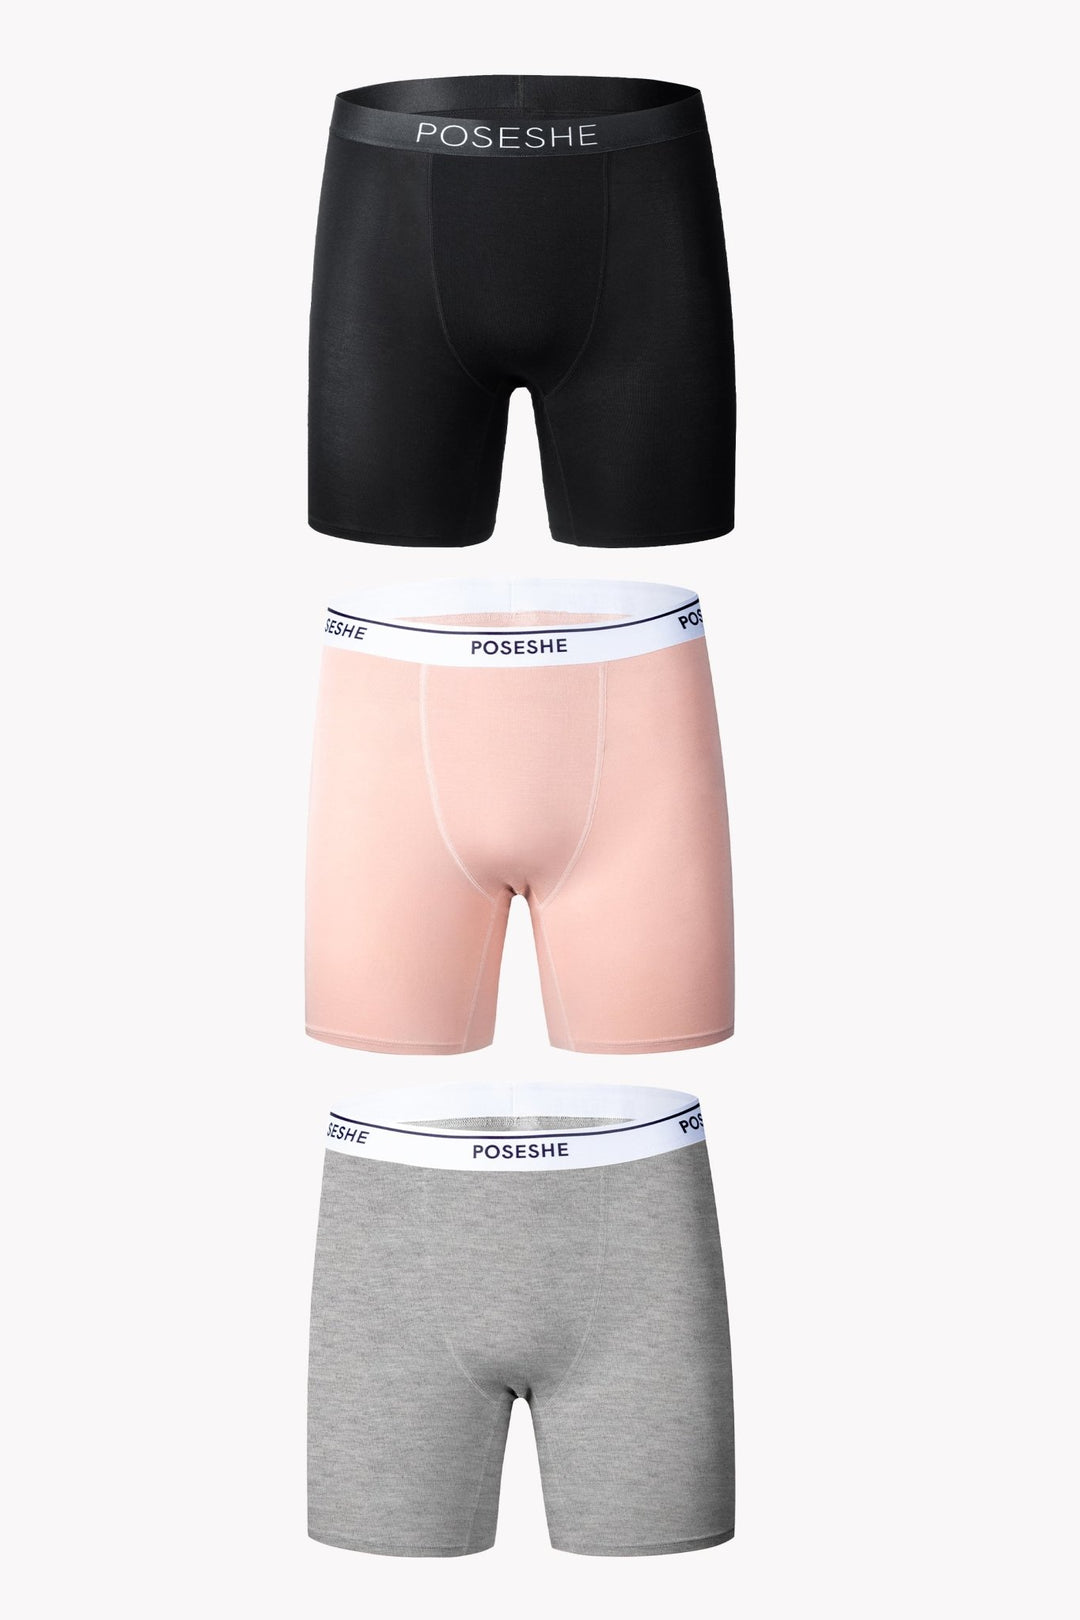 Garcon Model underwear Best underwear Blue trunks for men best quality  beach 1 – Underwear News Briefs